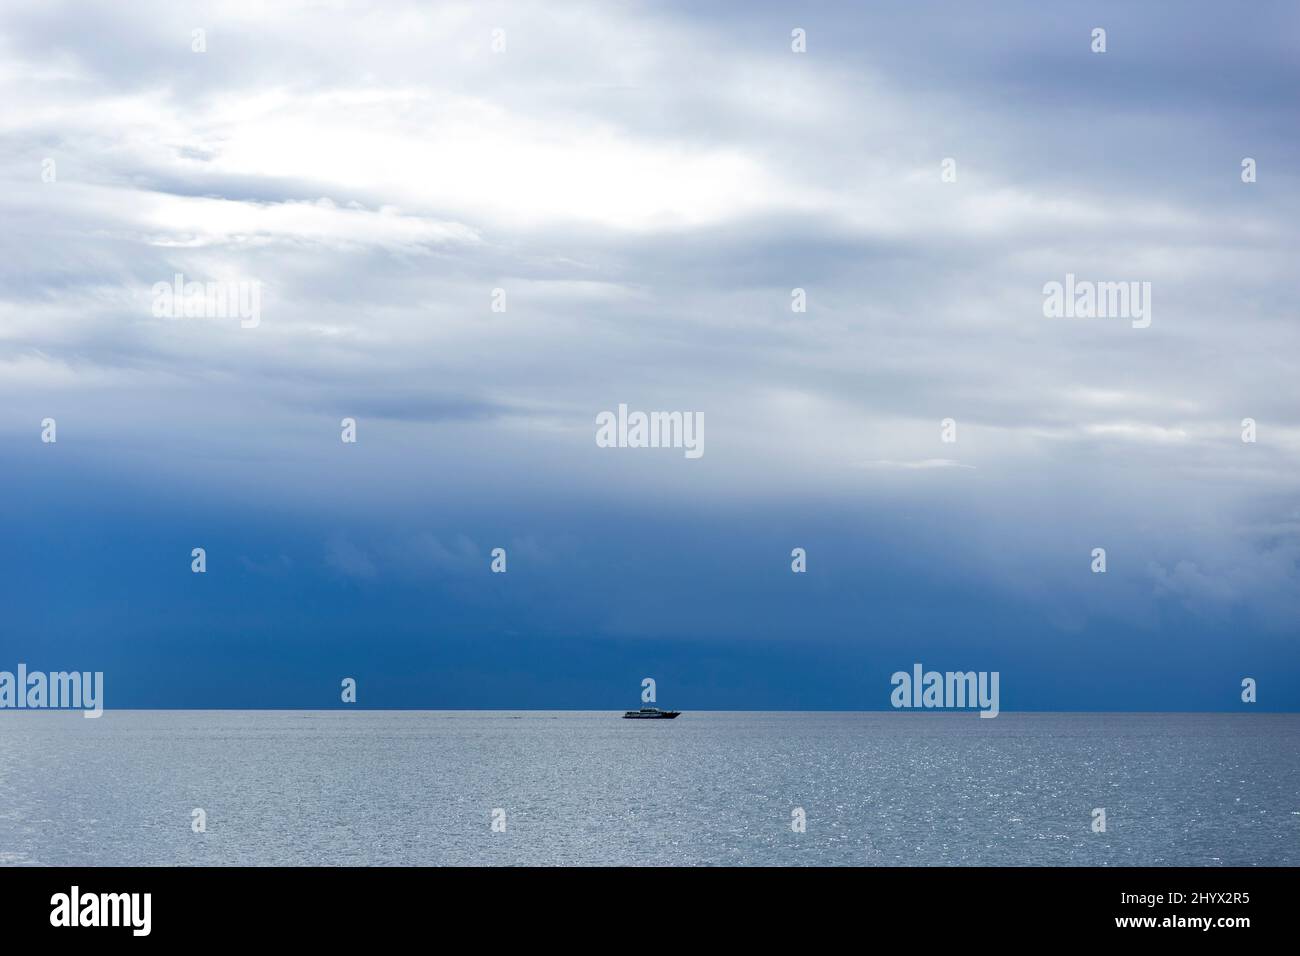 Vista del paisaje sobre el mar Mediterráneo en un día nublado, caprichoso y tormentoso Foto de stock